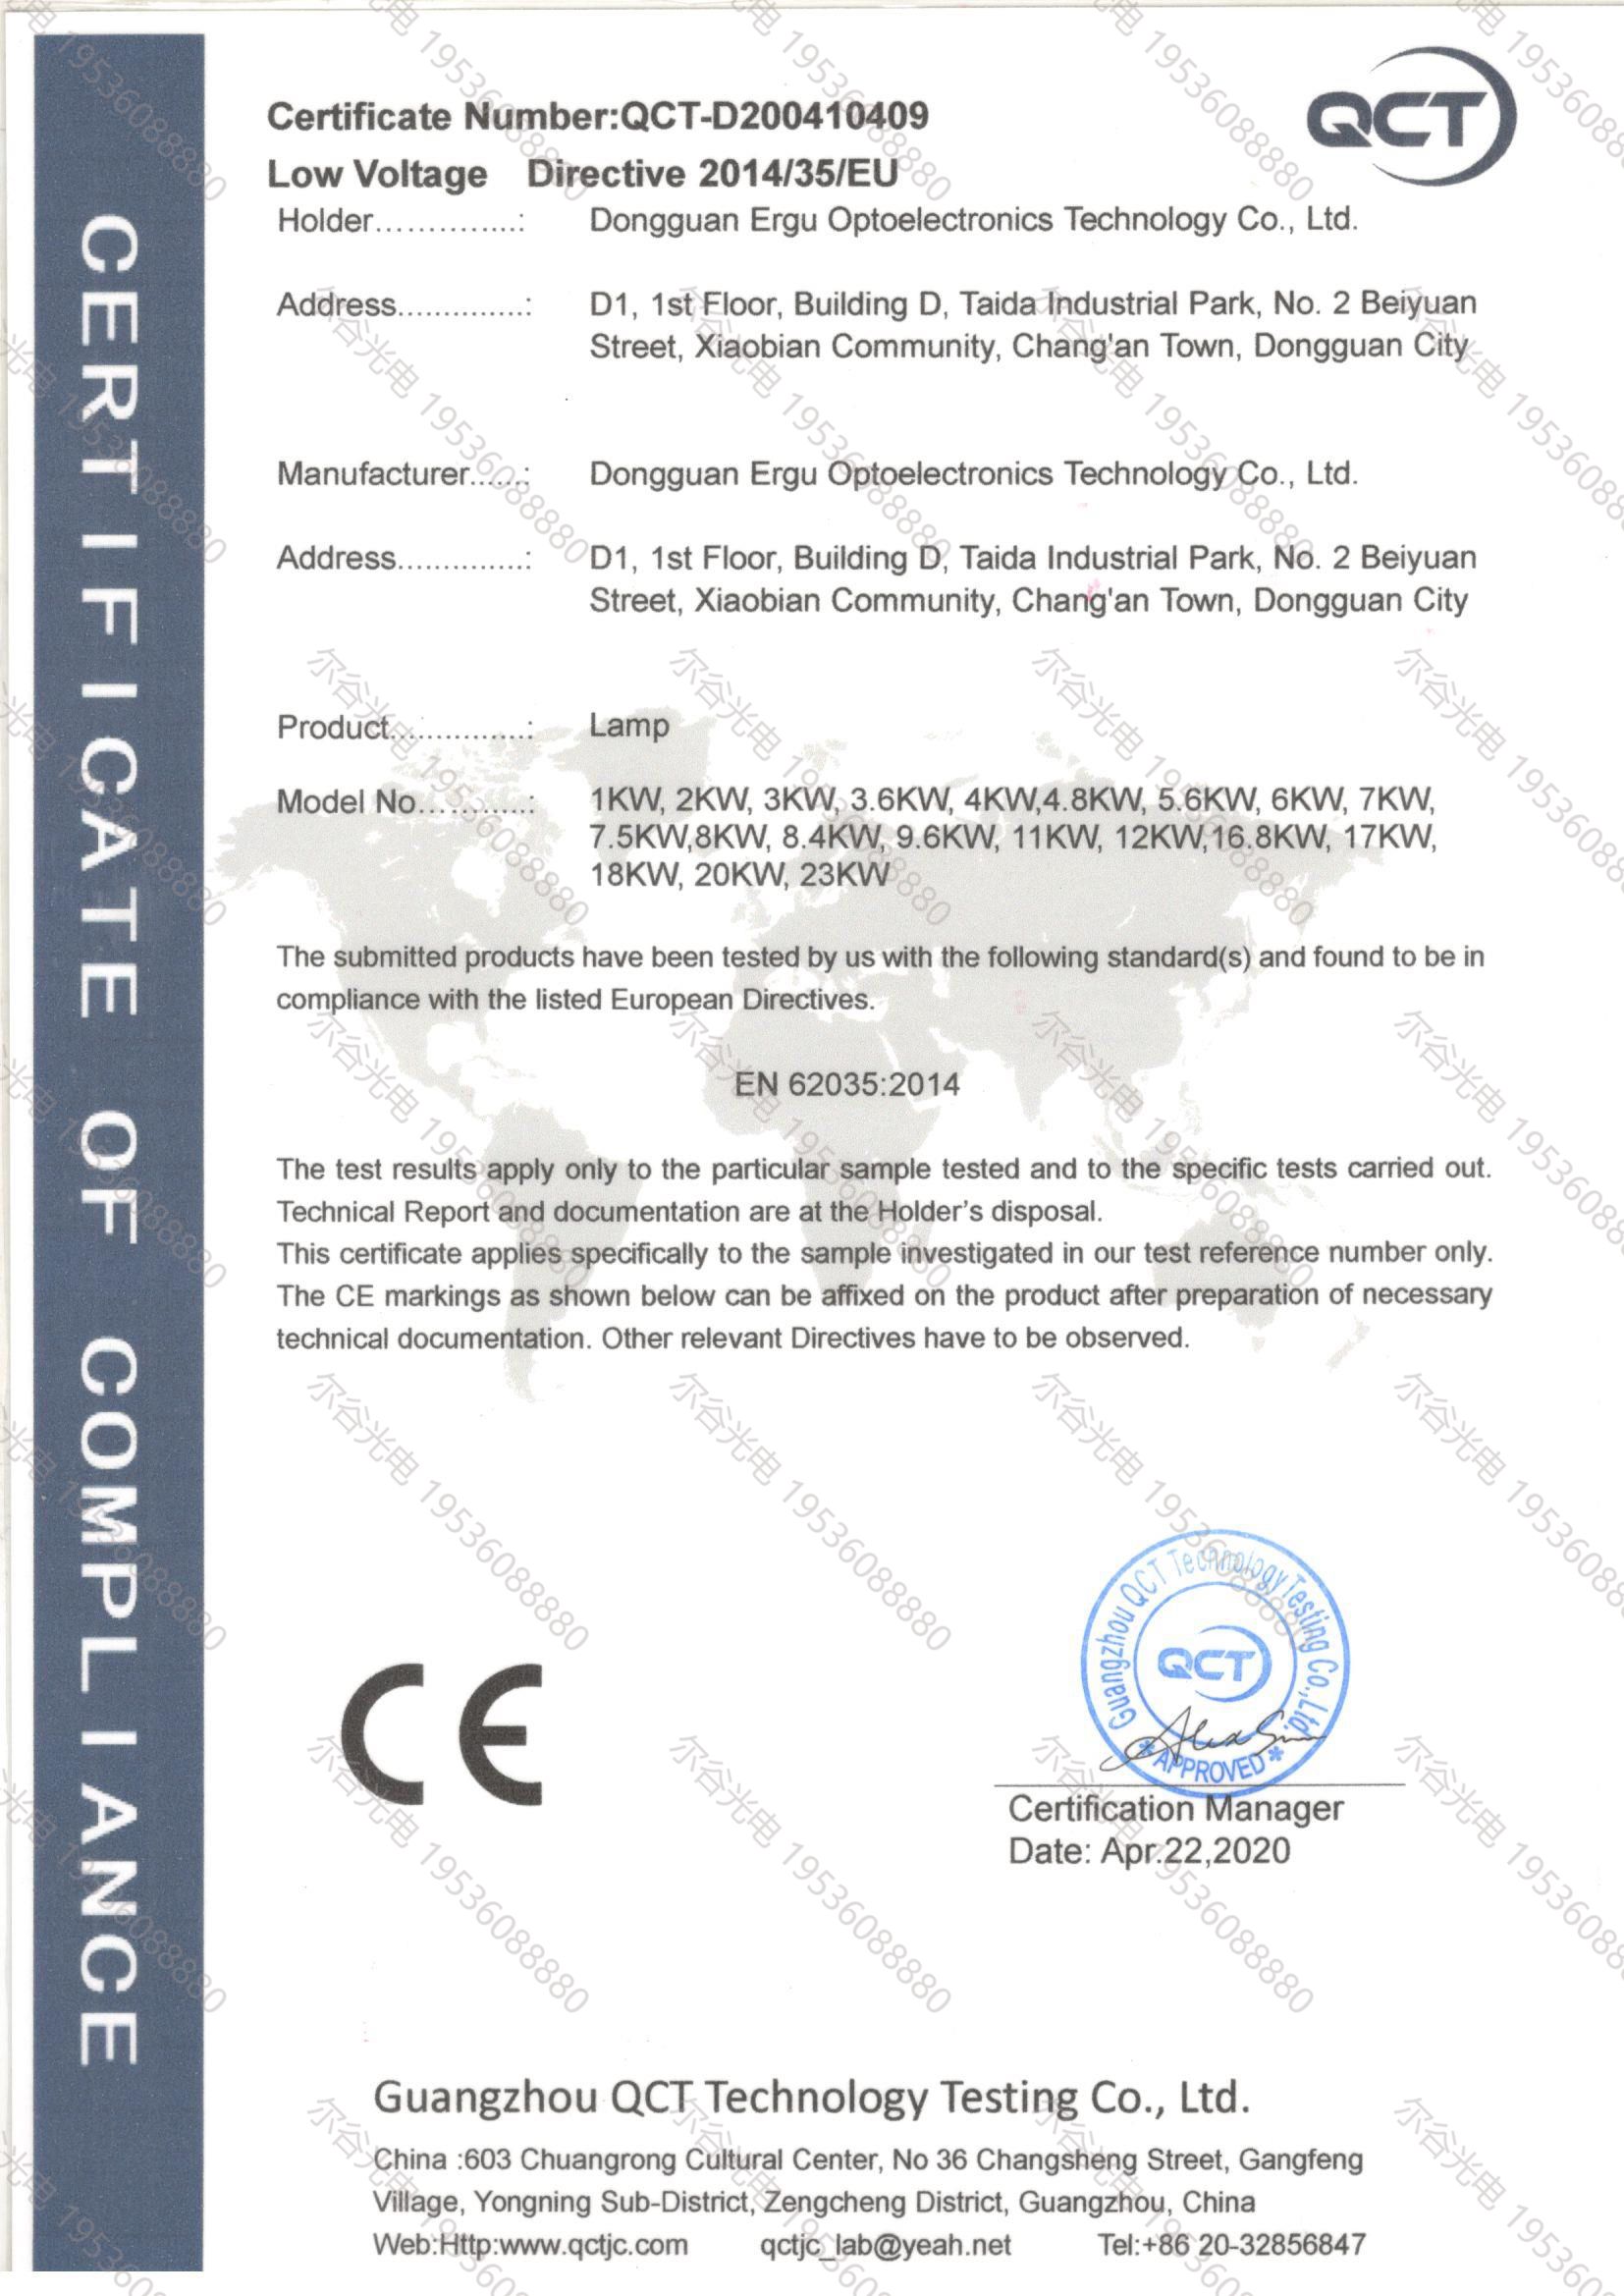 紫外線固化燈CE認證證書